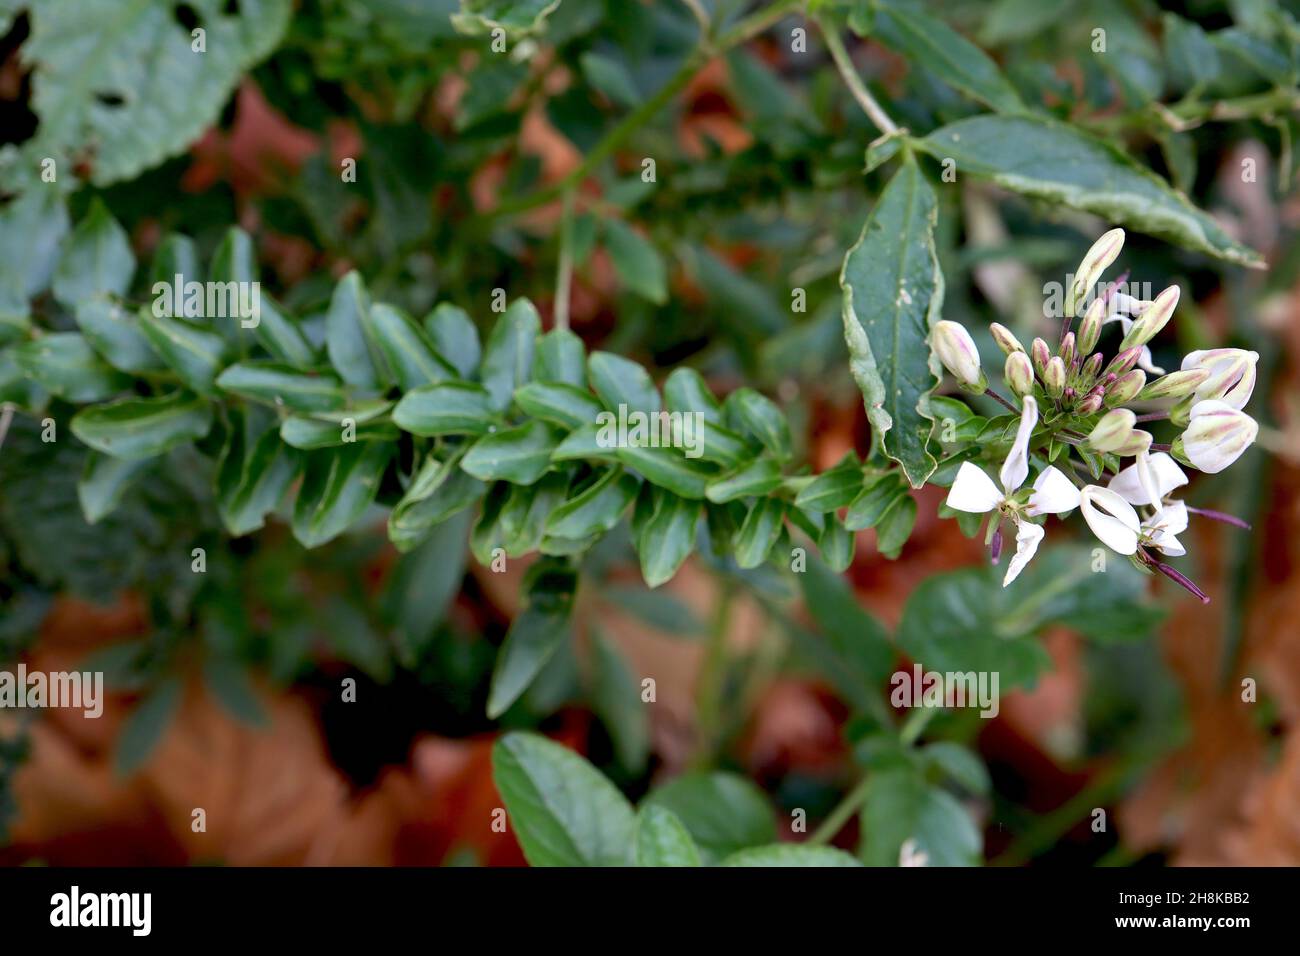 Cleome hassleriana Helen Campbell fleur en araignée Helen Campbell – amas de pétales blancs séparés, de feuilles de palmate et de tiges hautes, novembre, Royaume-Uni Banque D'Images